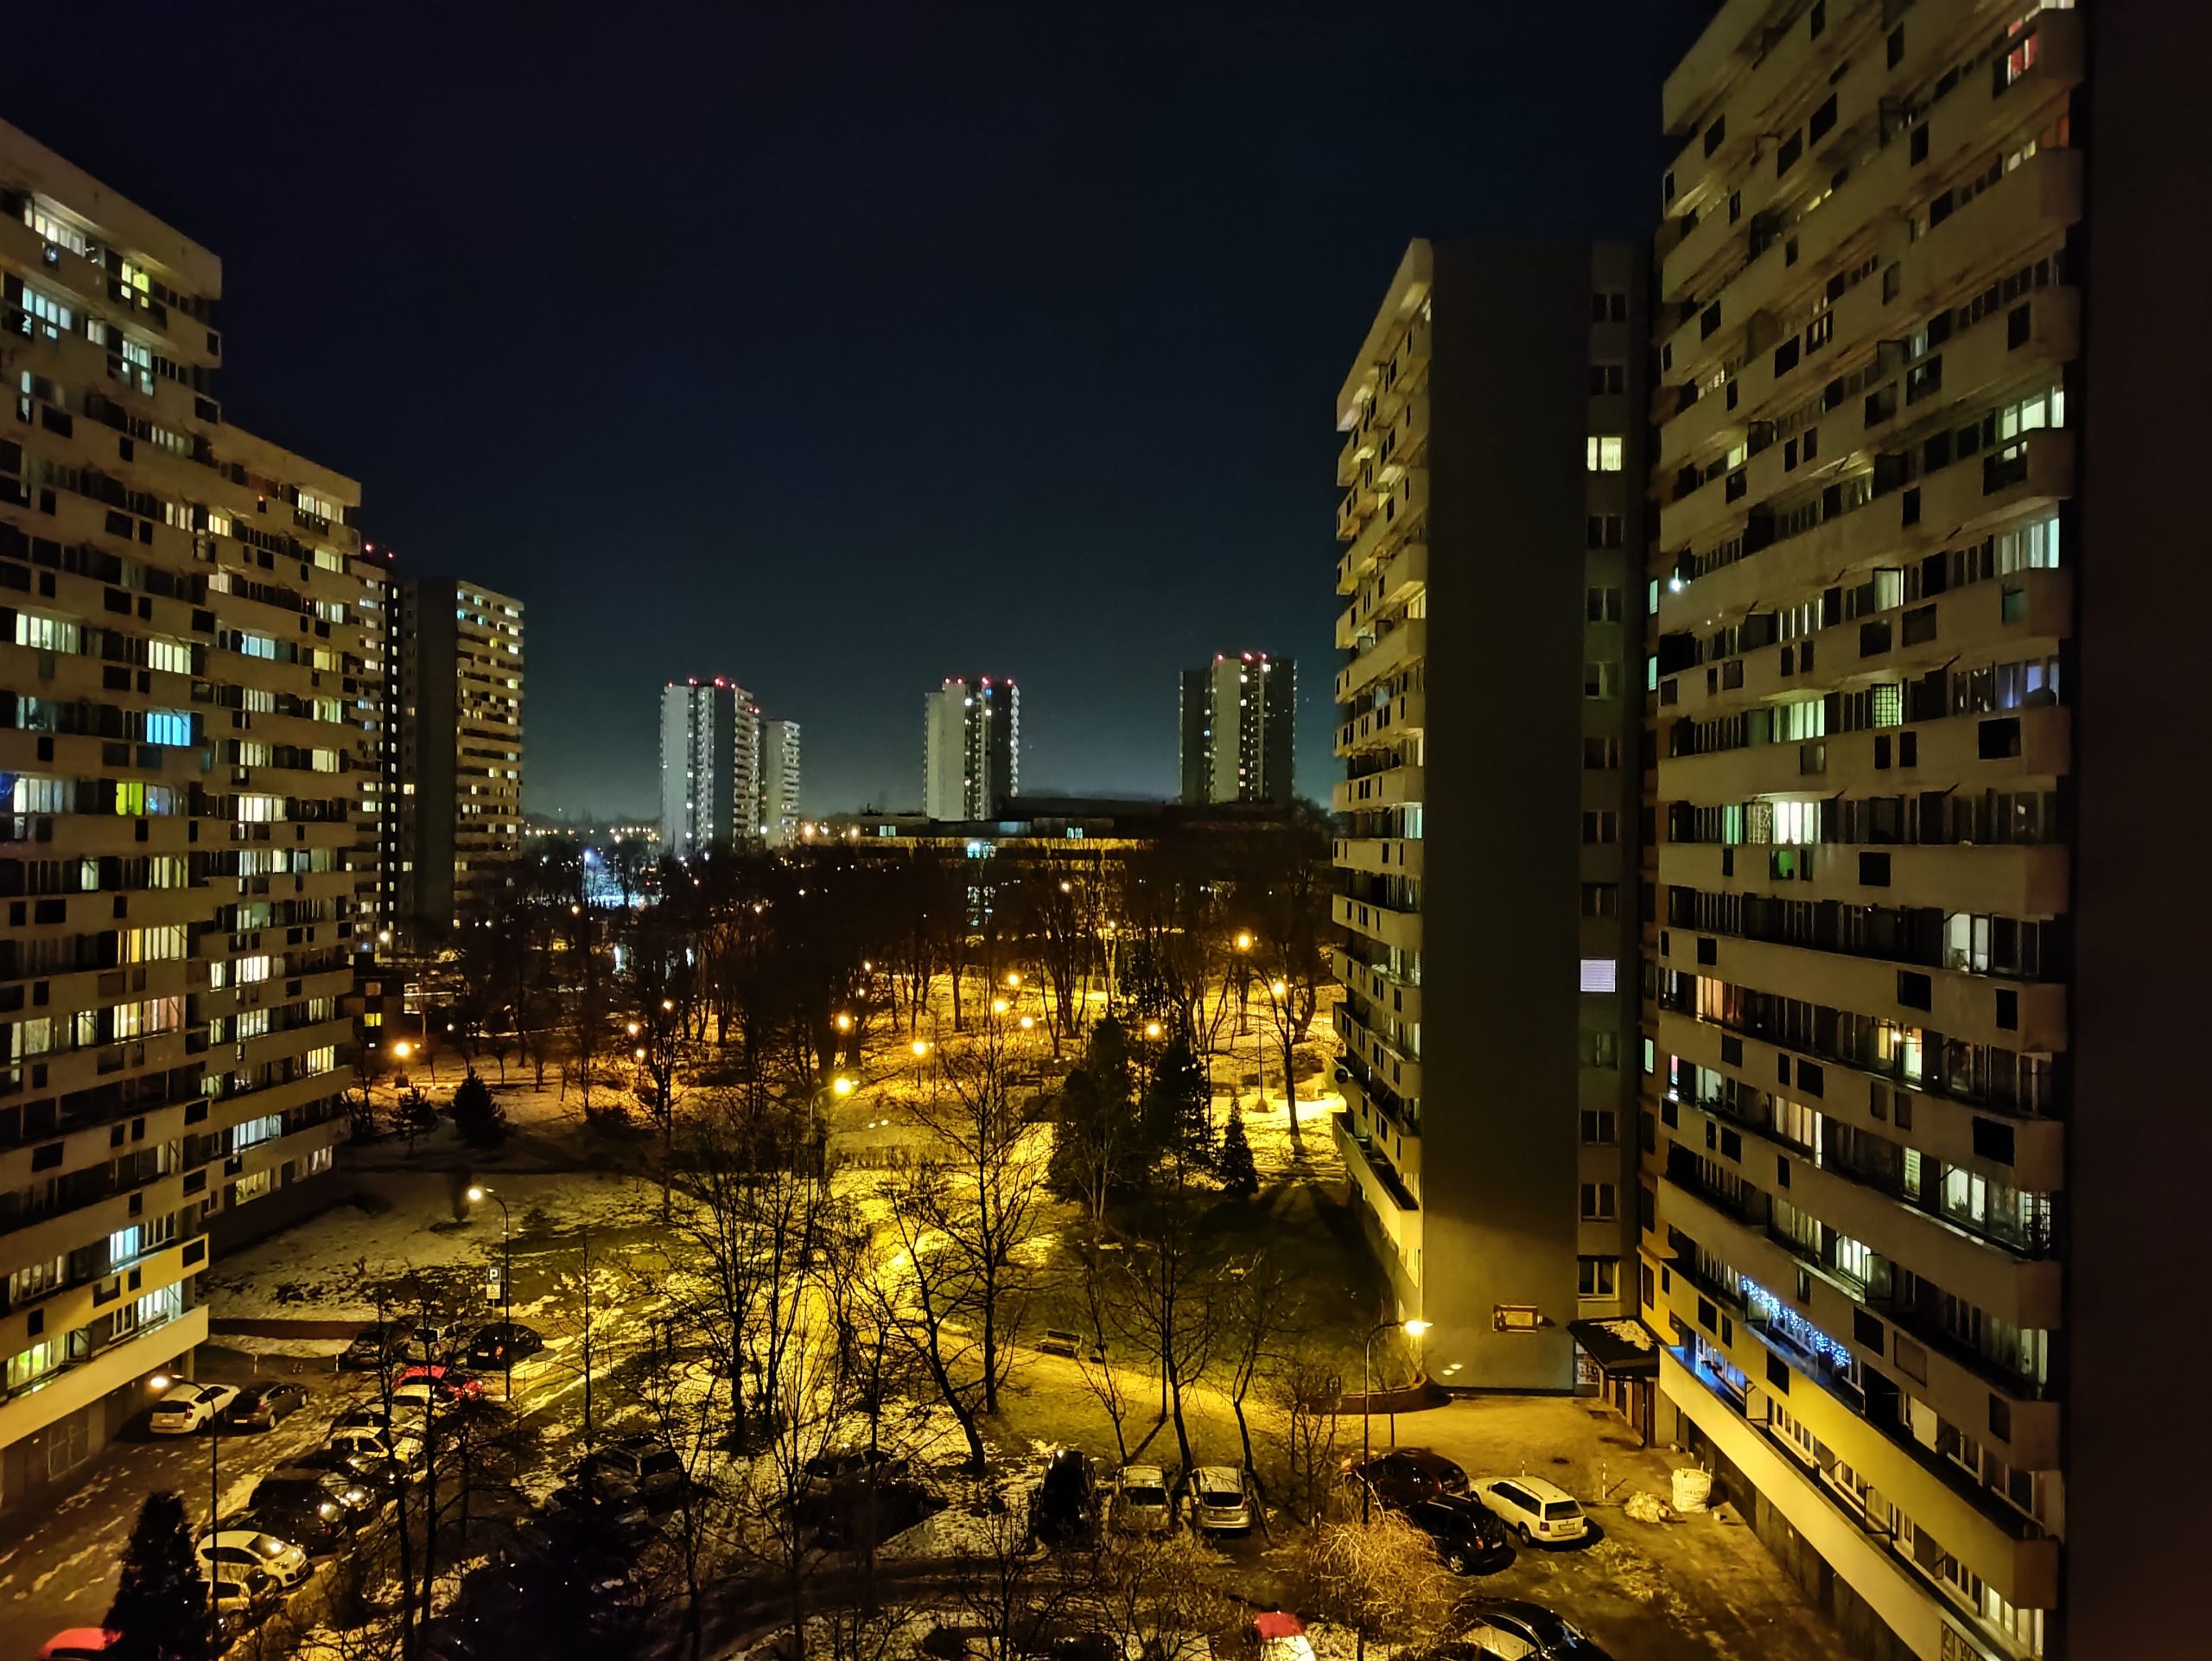 Zdjęcia nocne - OnePlus N10